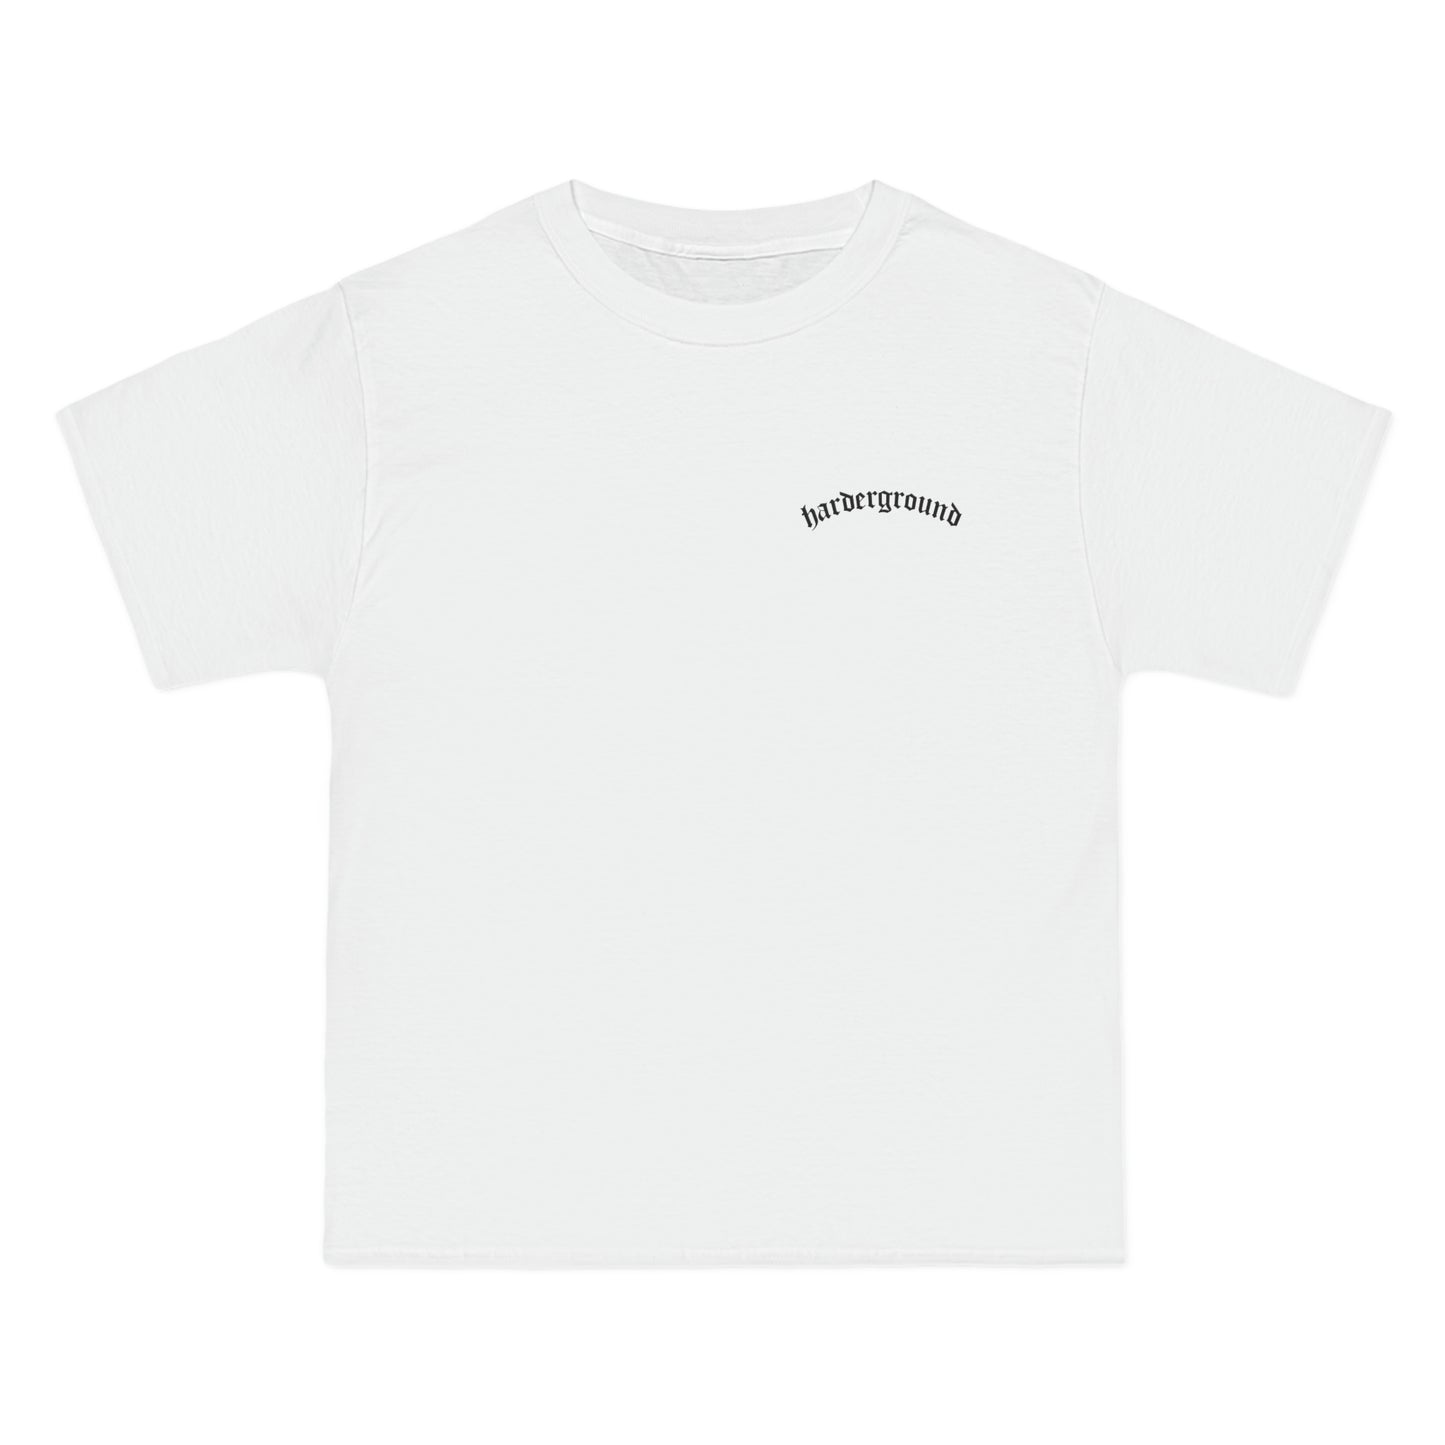 ART Harderground - Front &amp; back logos - Beefy-T® Short-Sleeve T-Shirt